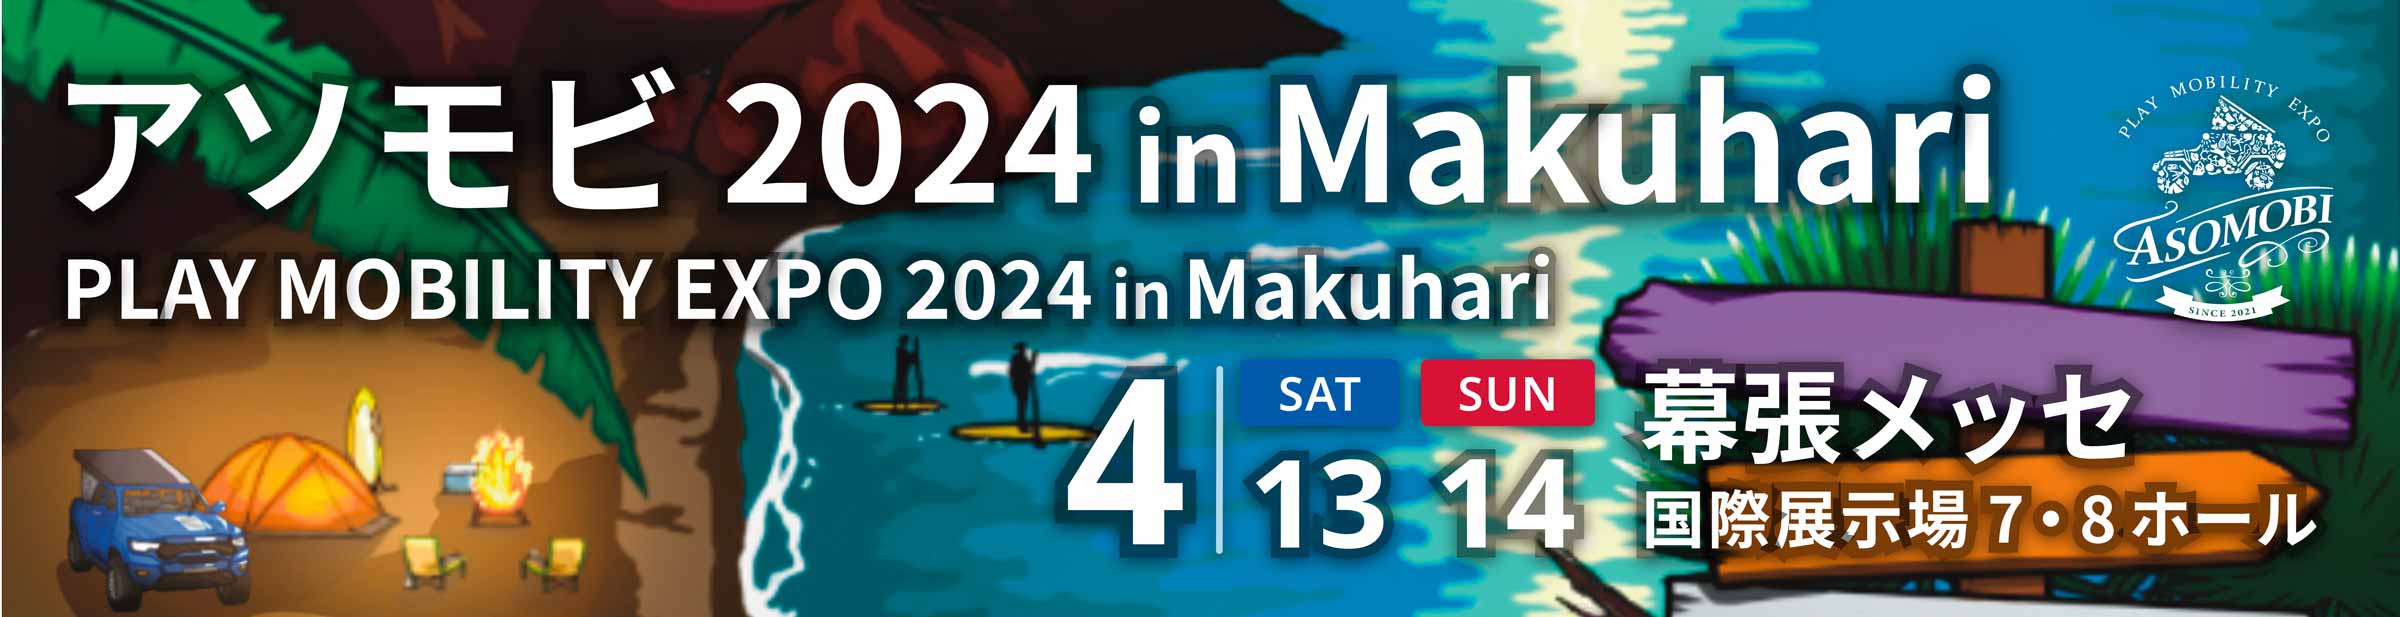 アソモビ2024 in Makuhari PLAY MOBILITY EXPO 2024 in Makuhari 4月13日SAT 14日SUN 幕張メッセ国際展示場7・8ホール